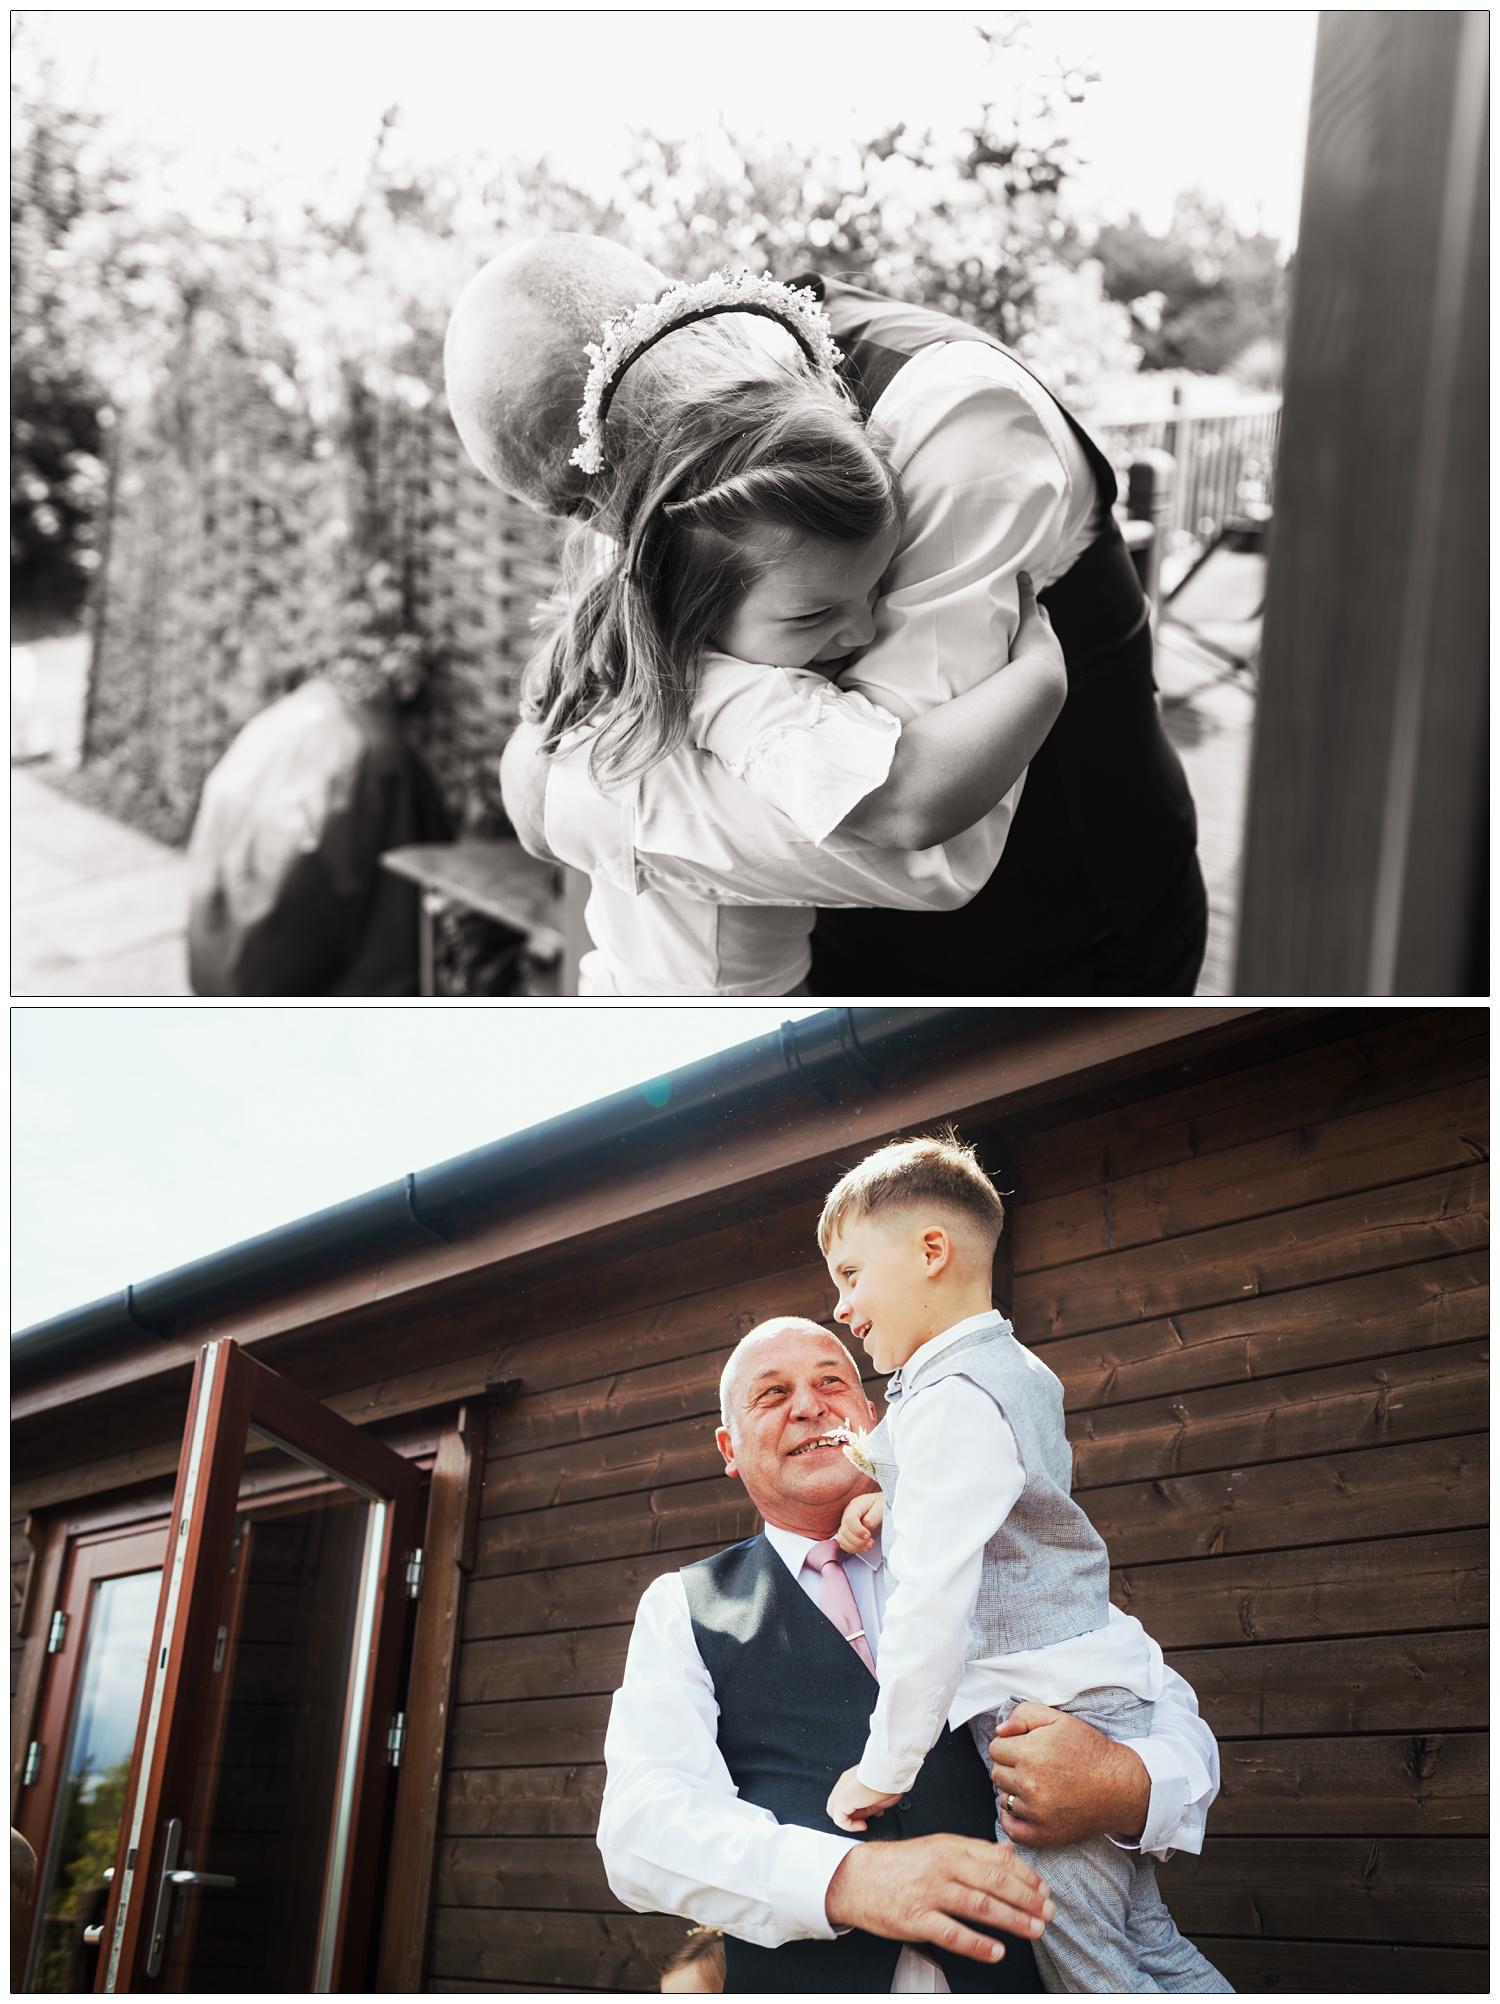 A grandad hugging his grandchildren.